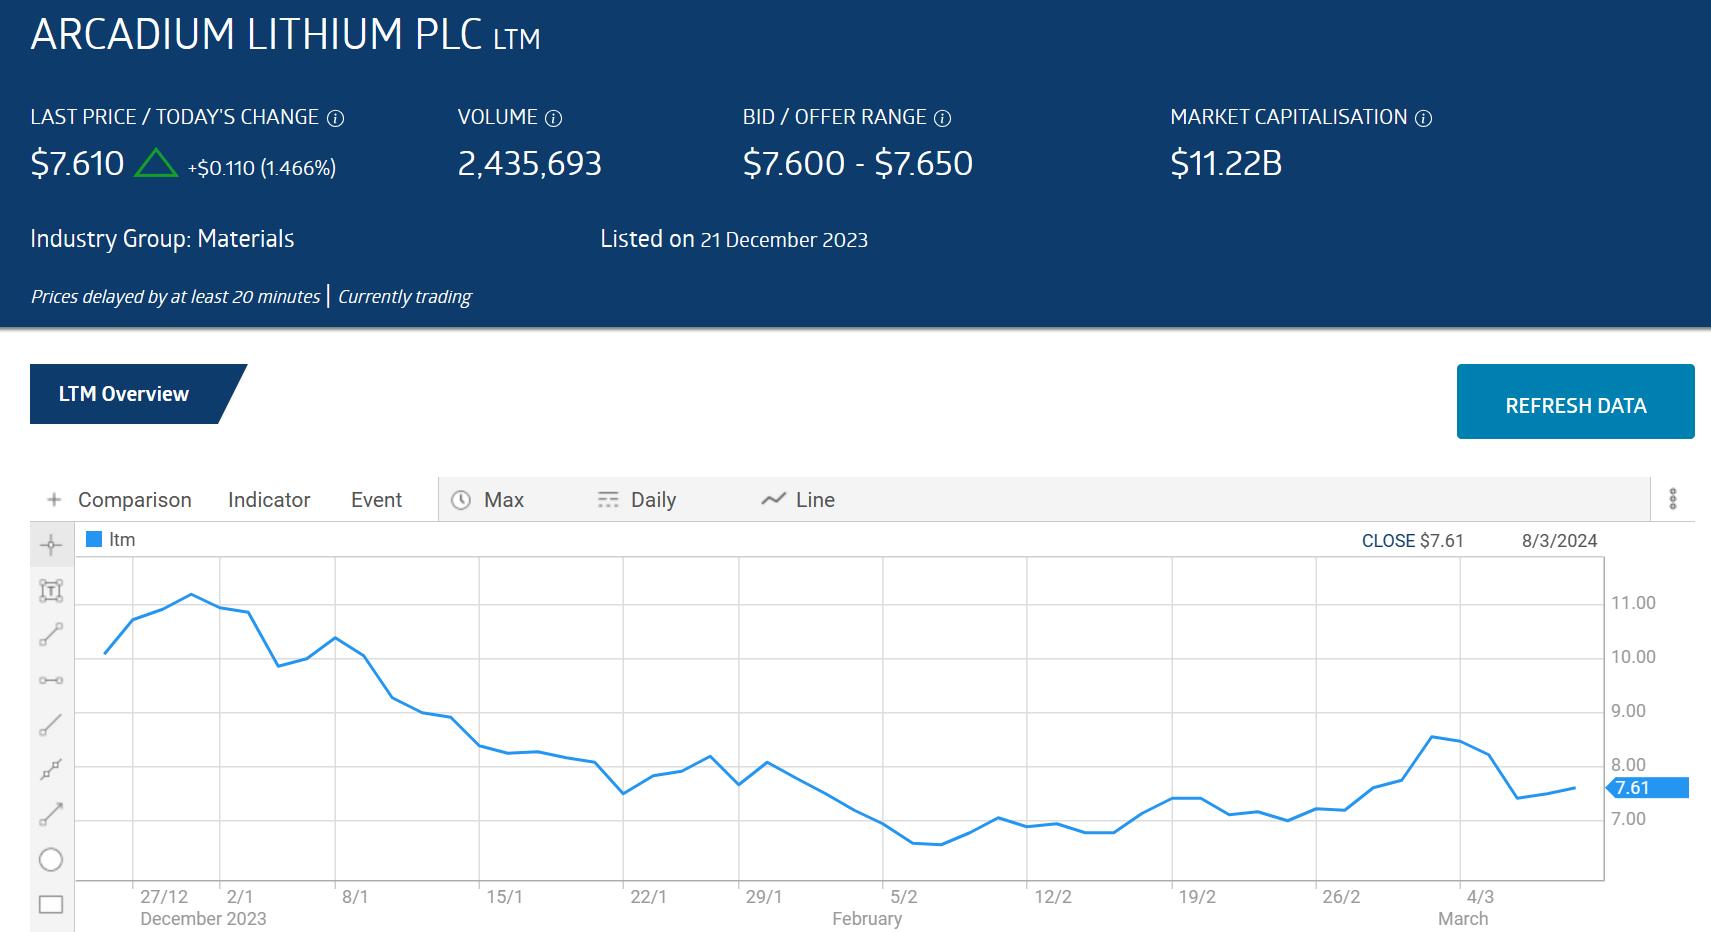 ltm arcadium lithium plc stock price chart march 2024